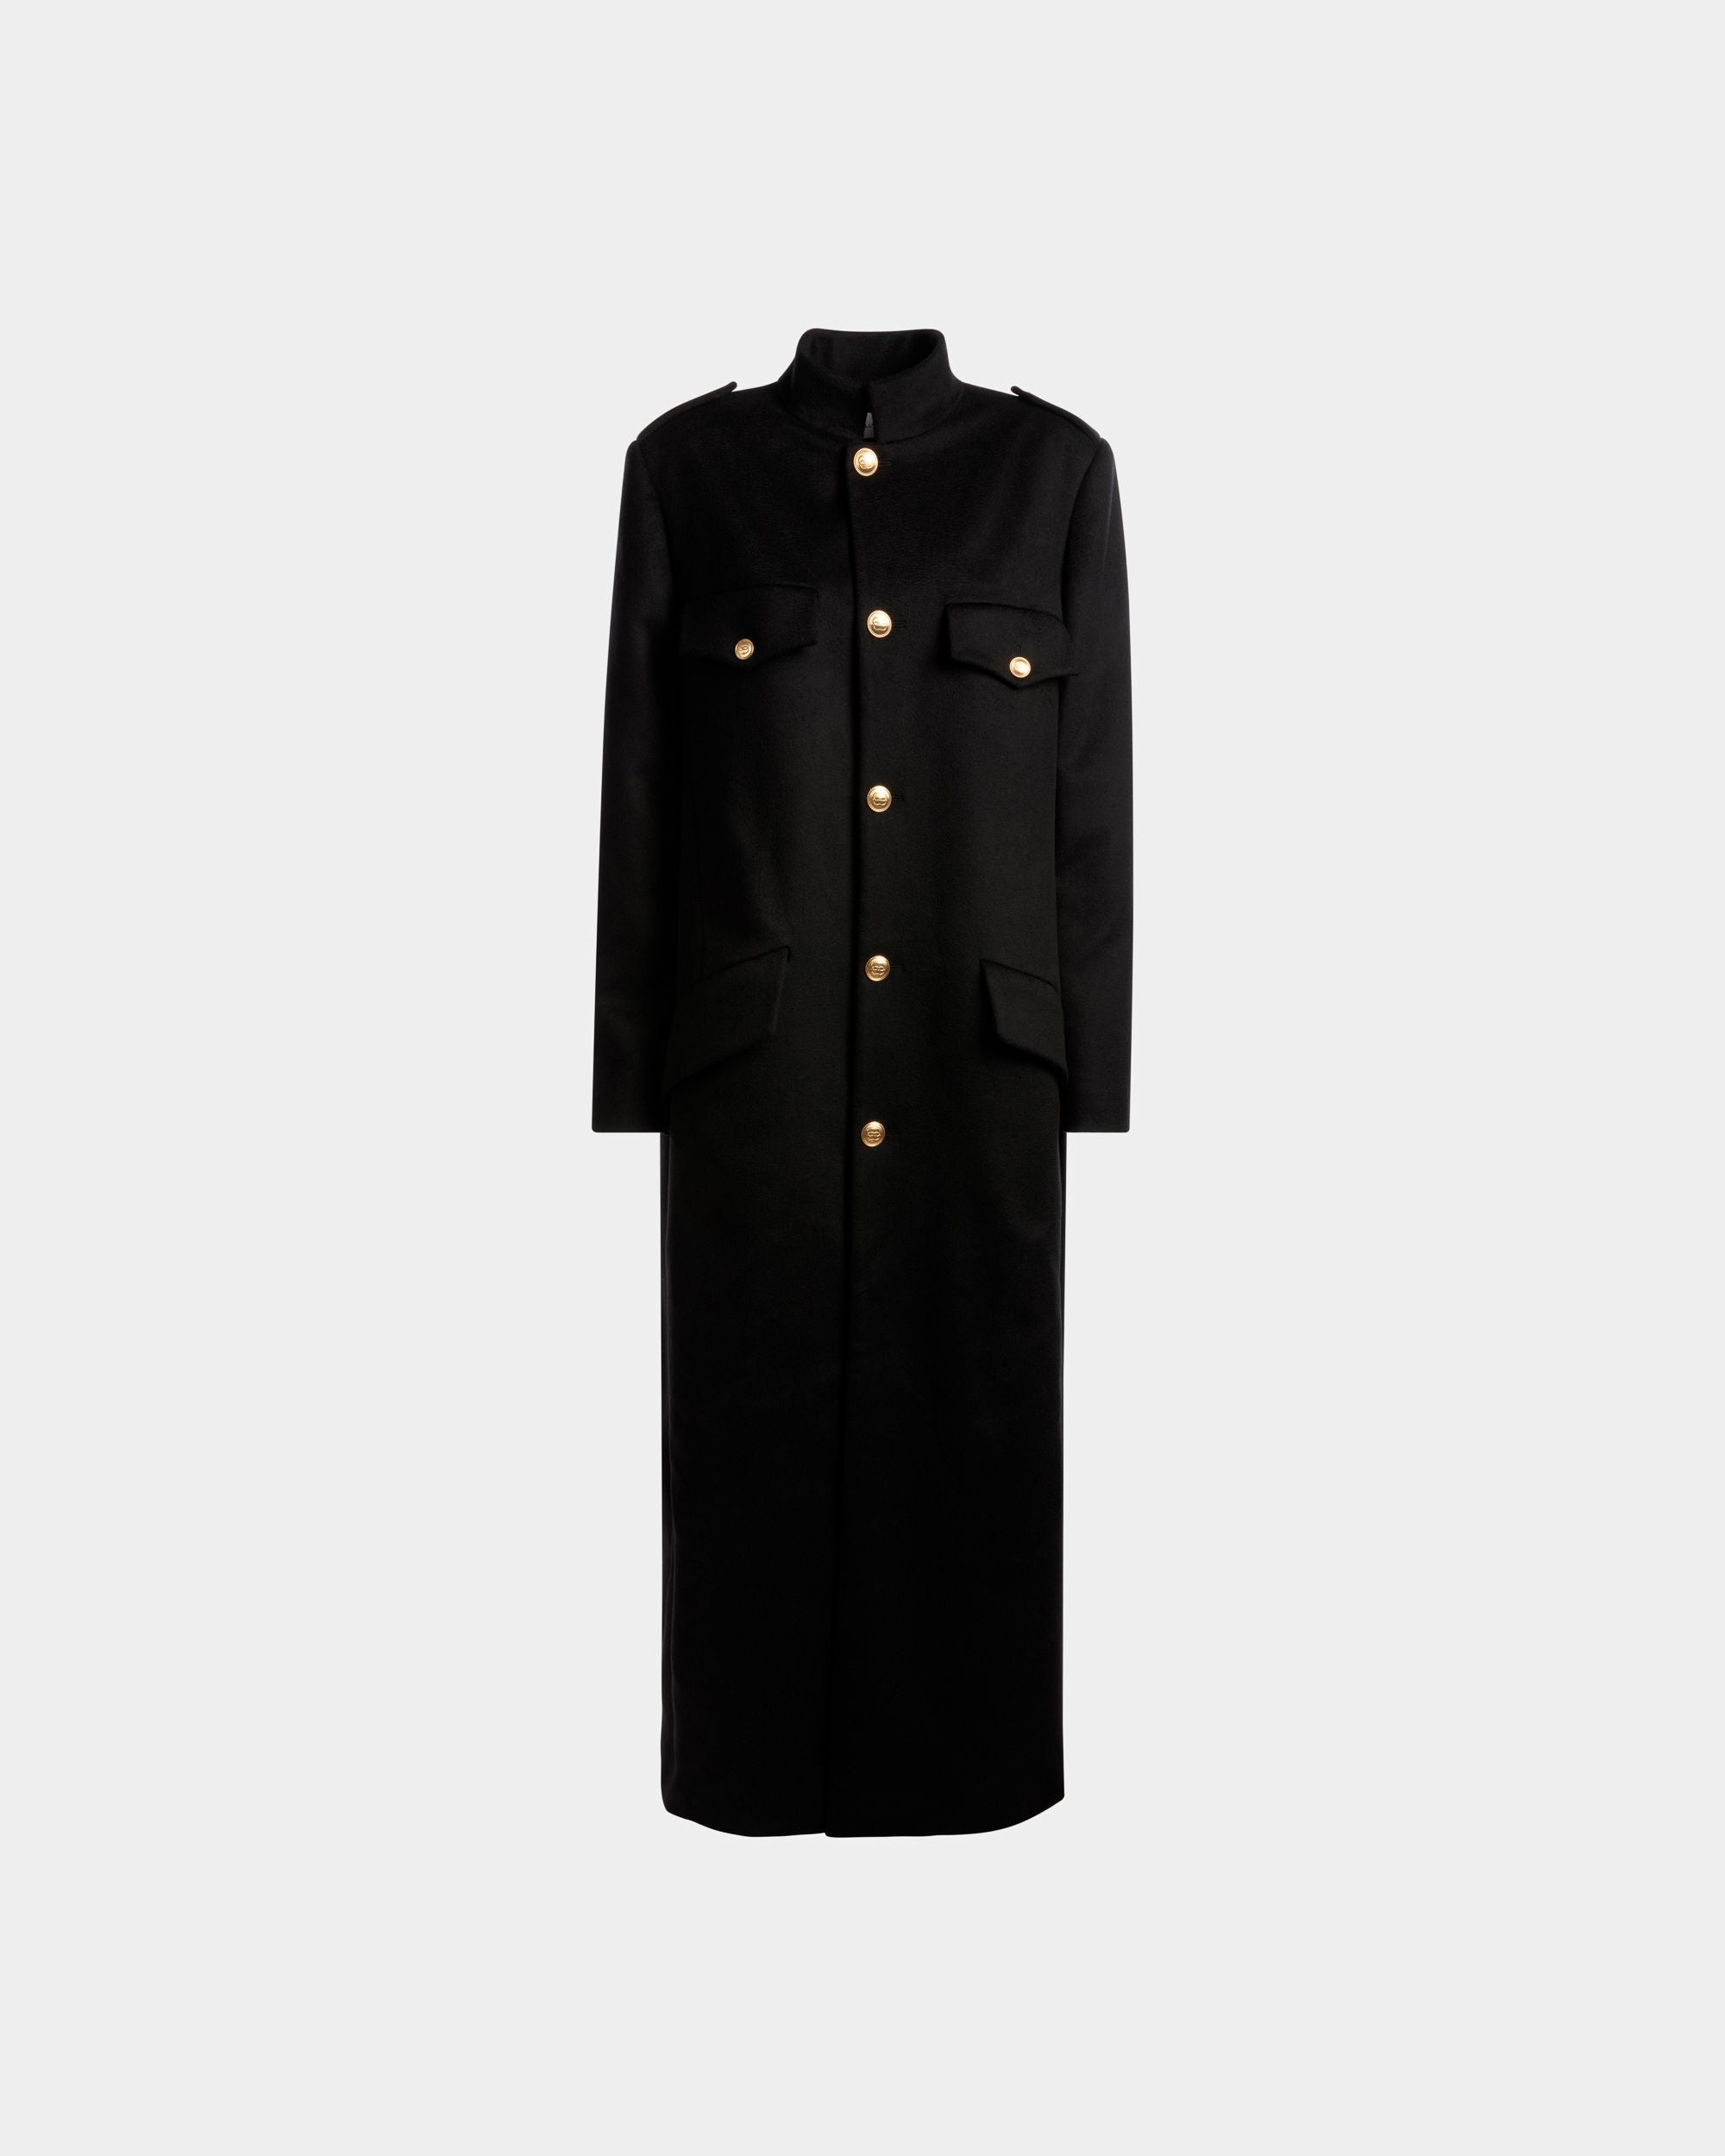 Long Buttoned Coat | Women's Outerwear | Navy Wool Mix | Bally | Still Life Front